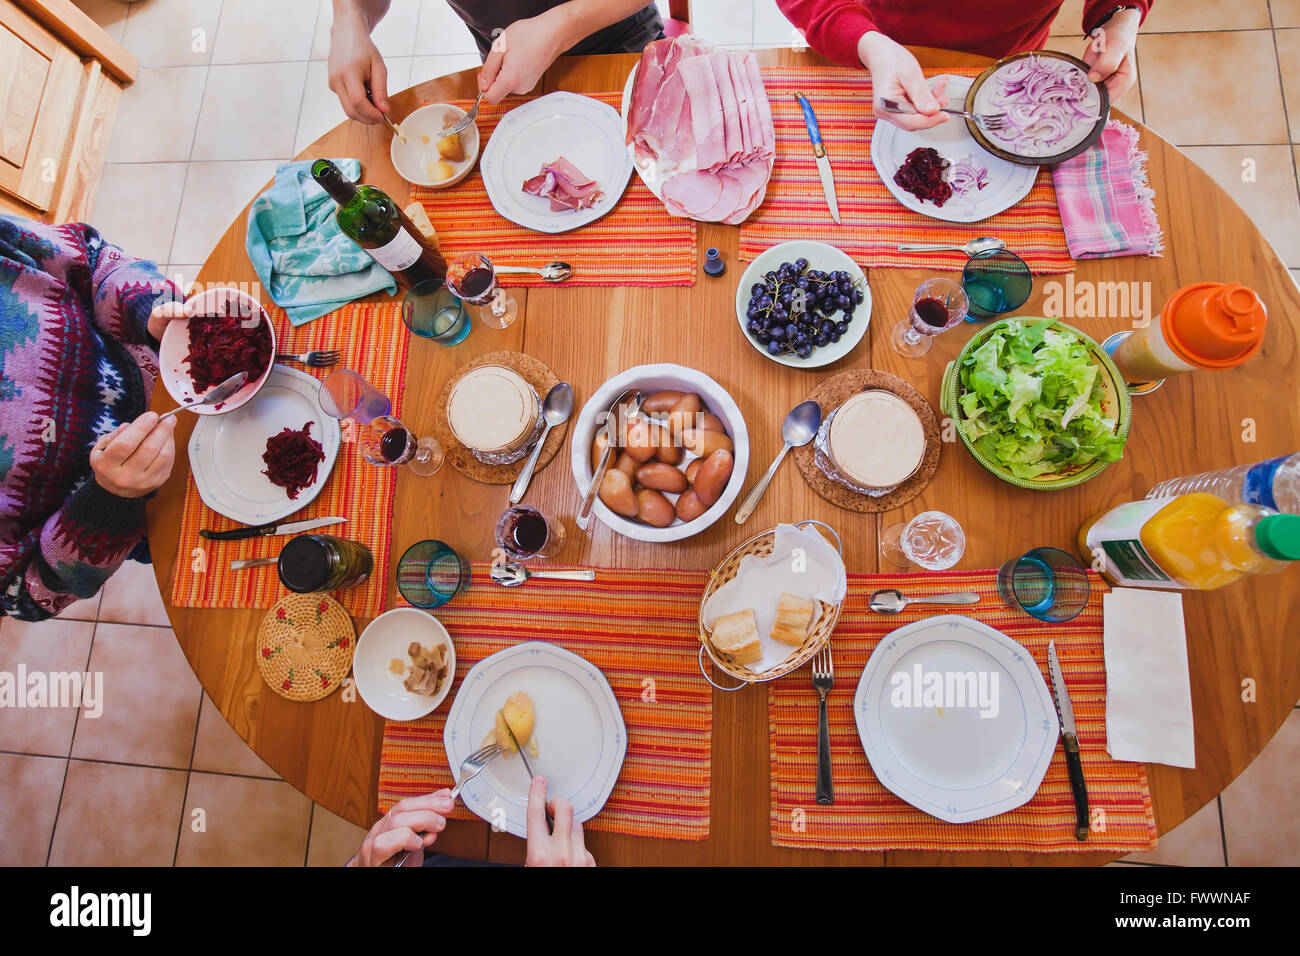 Family having lunch à la maison, vue du dessus de la table avec la nourriture, cuisine française Banque D'Images